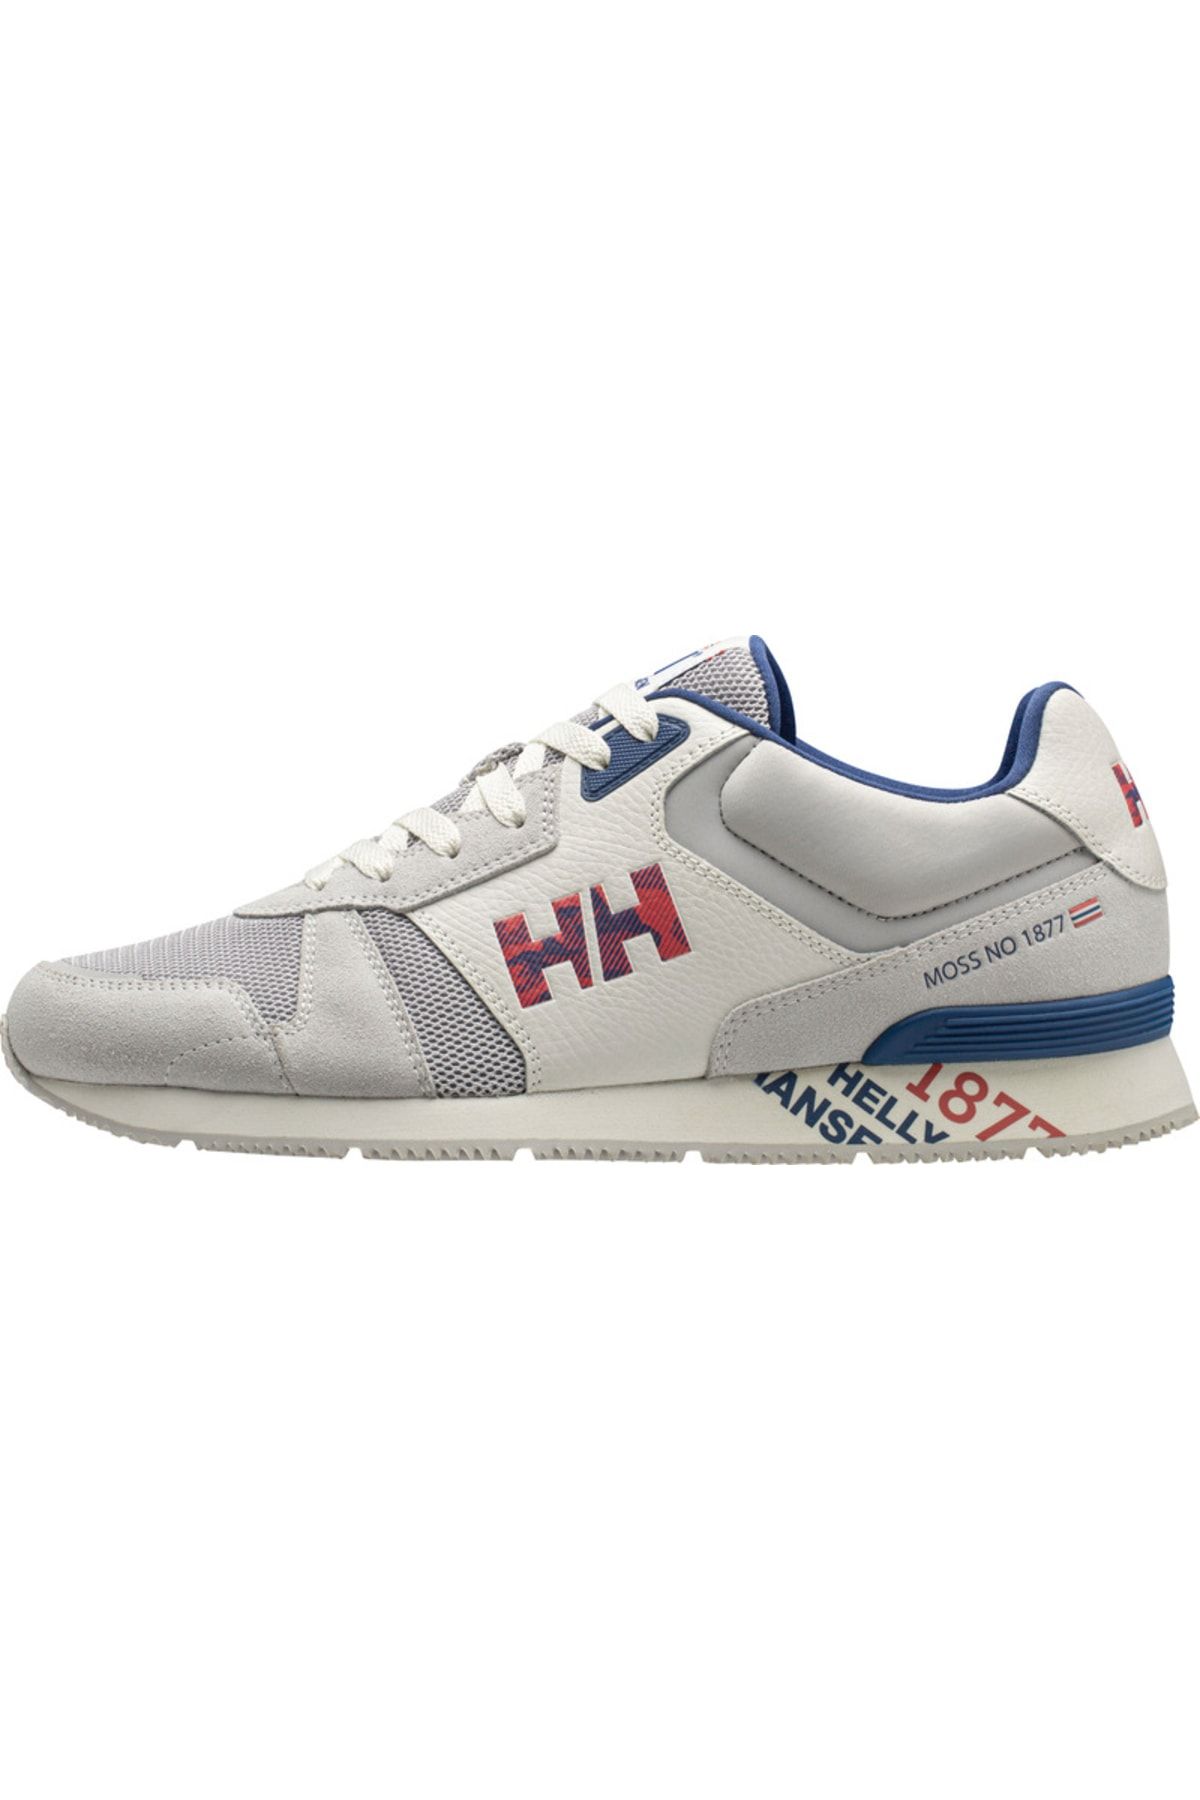 Helly Hansen Hh Anakın Leather - Spor Ayakkabı